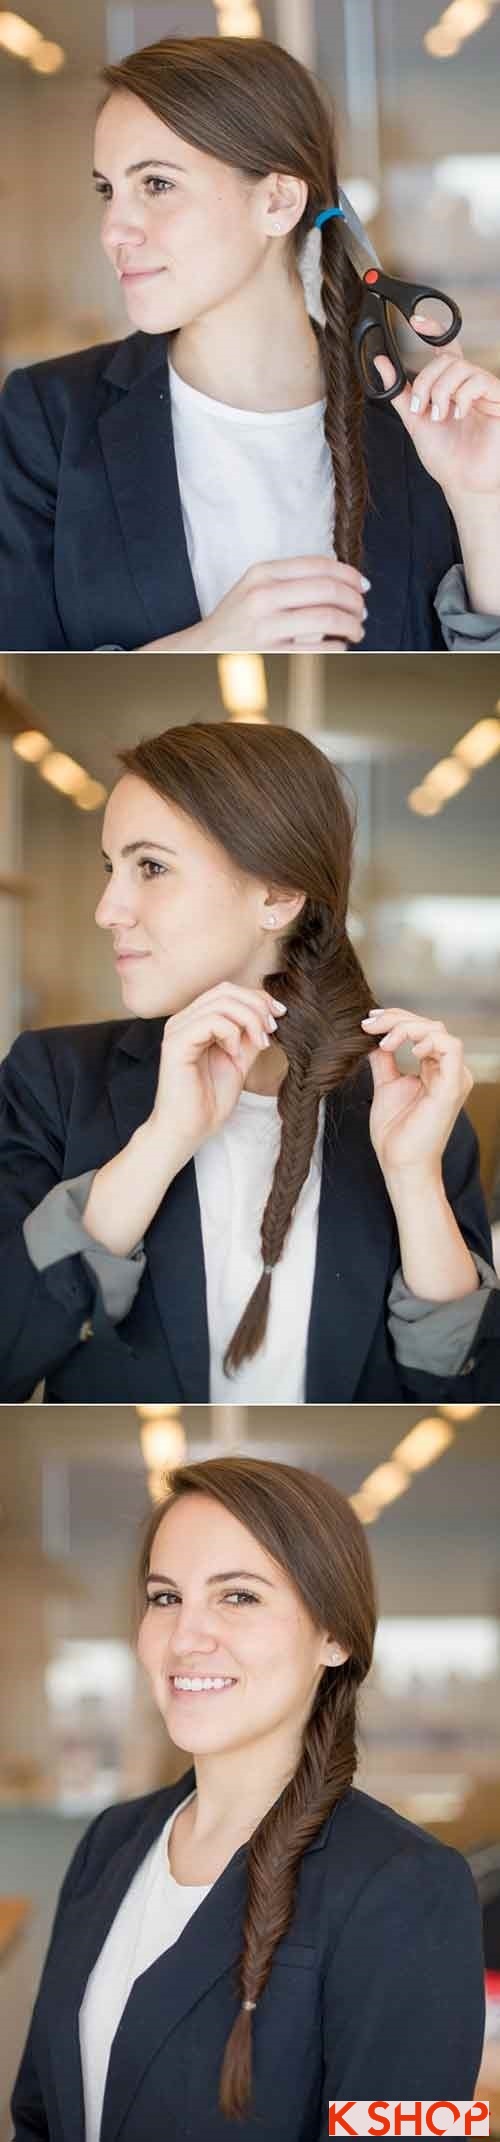 Những mẫu tóc đẹp đơn giản cho bạn gái công sở